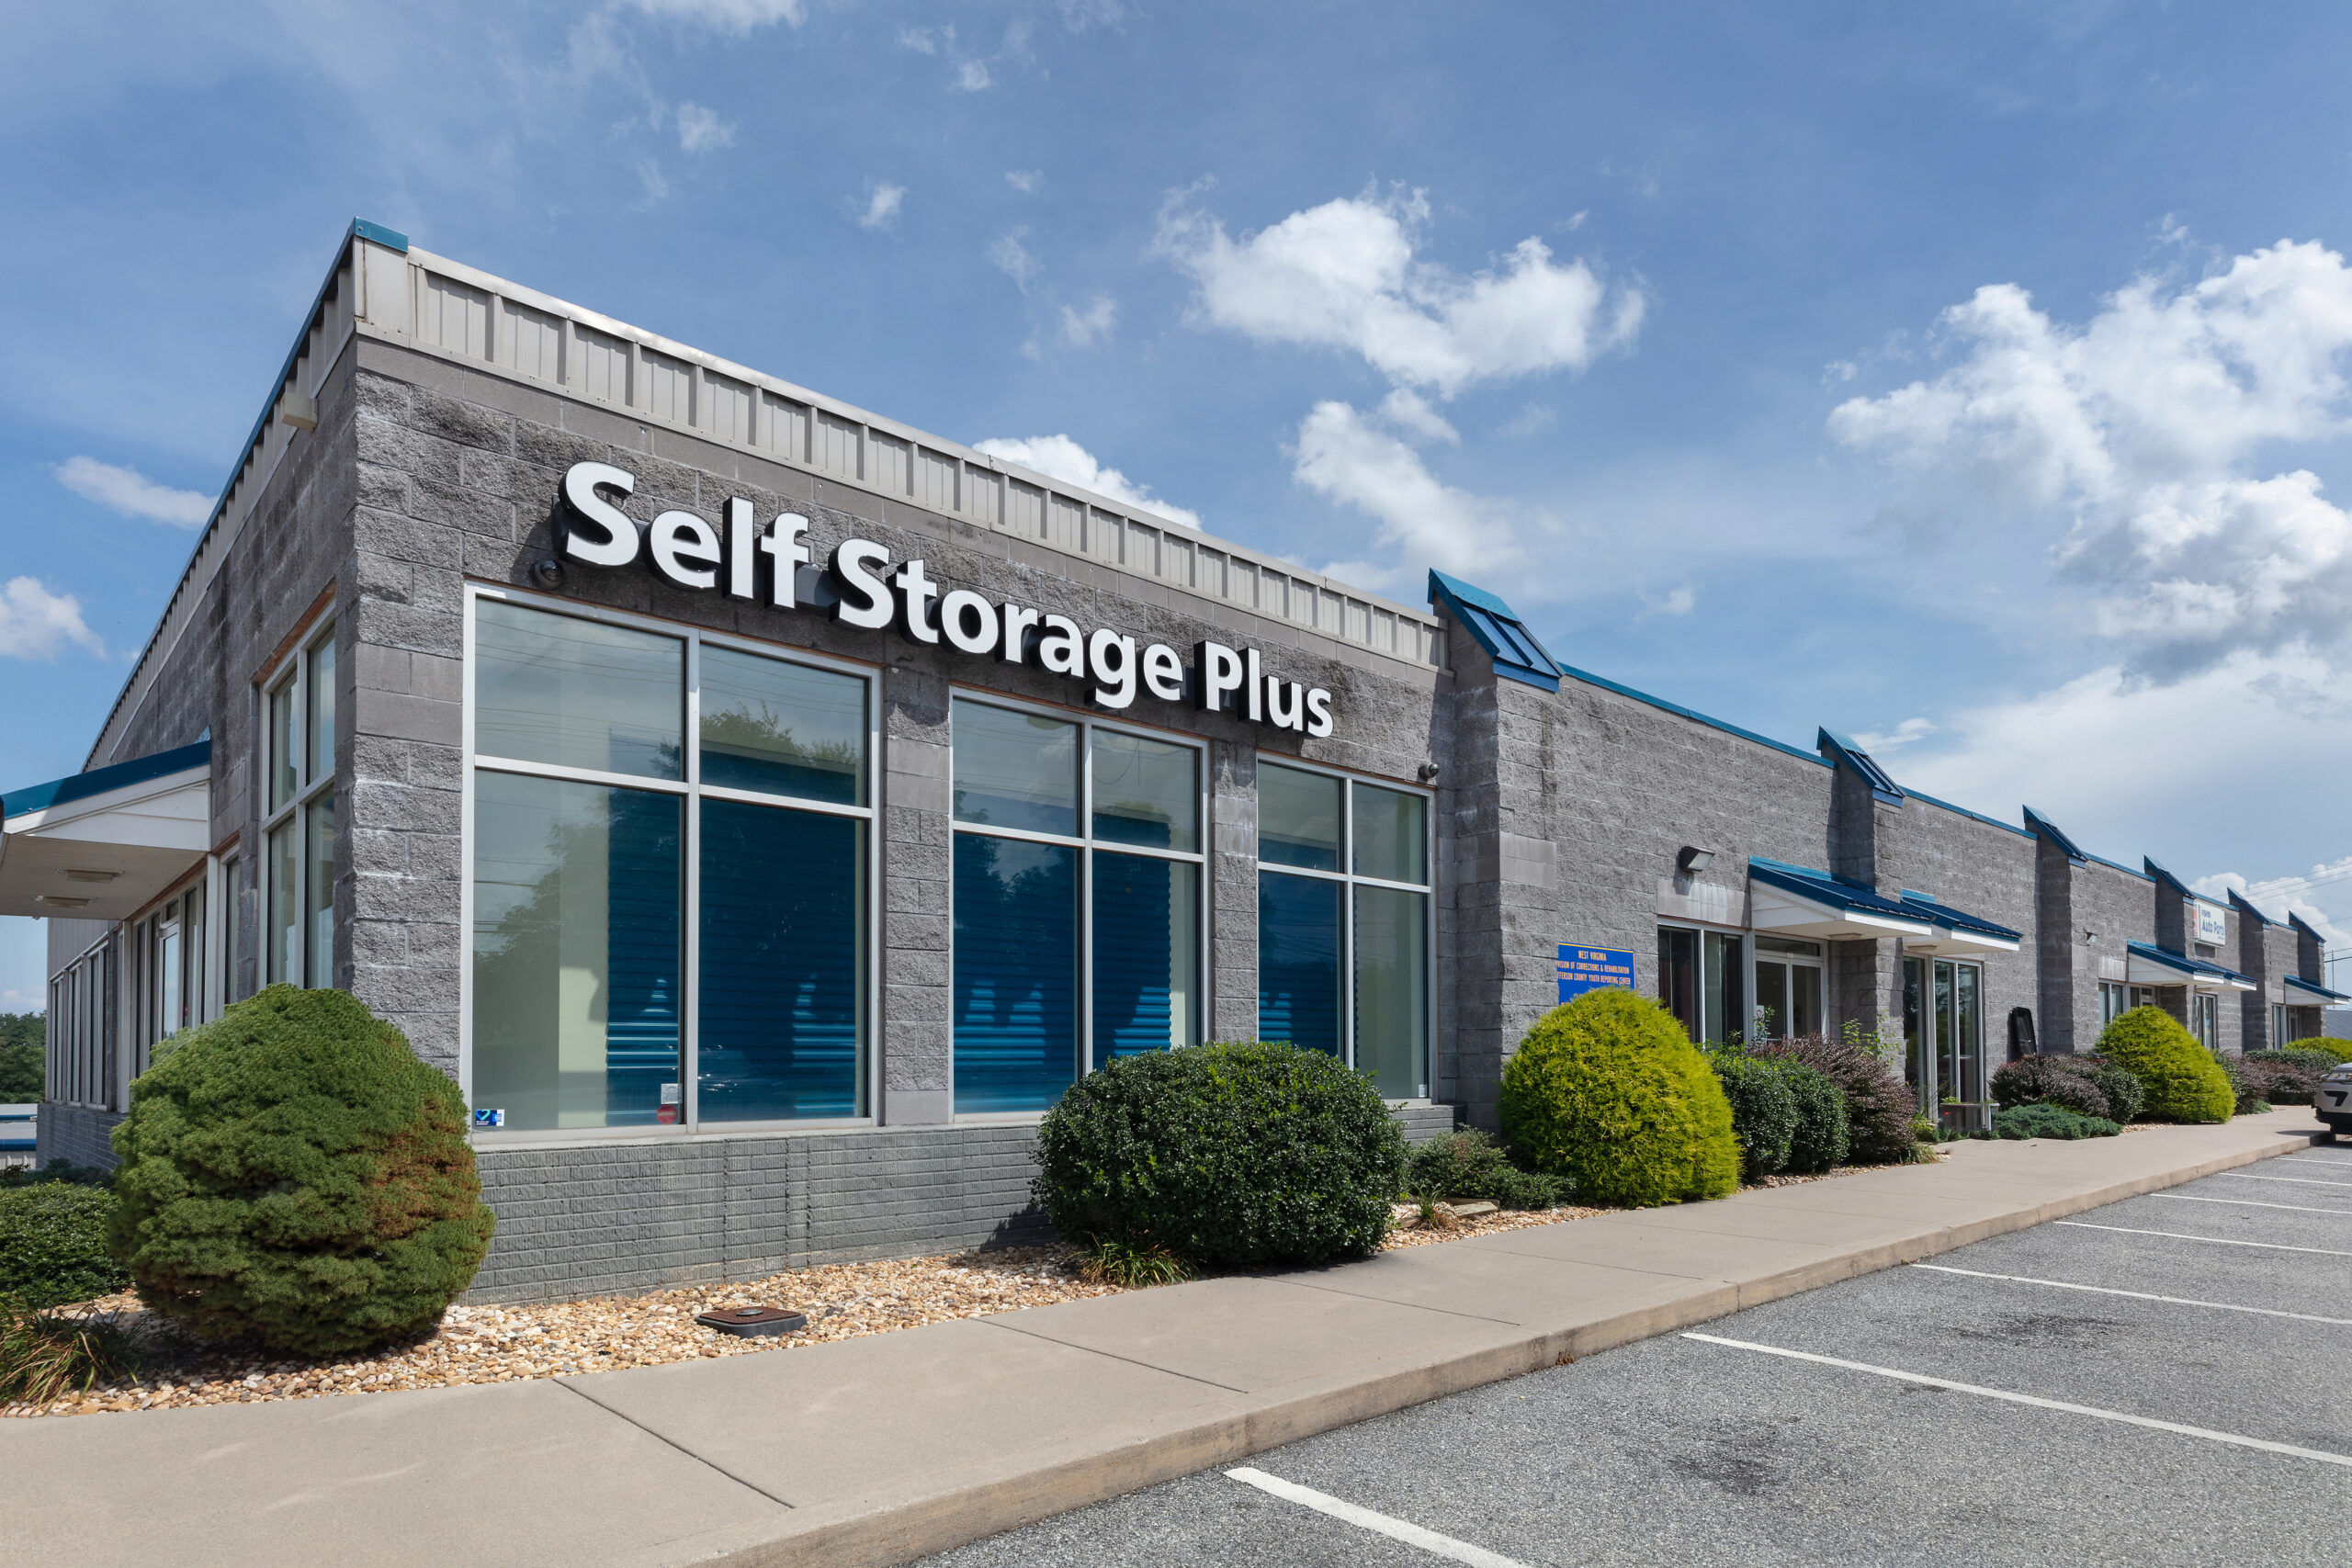 Exterior of Self Storage Plus in Ranson.